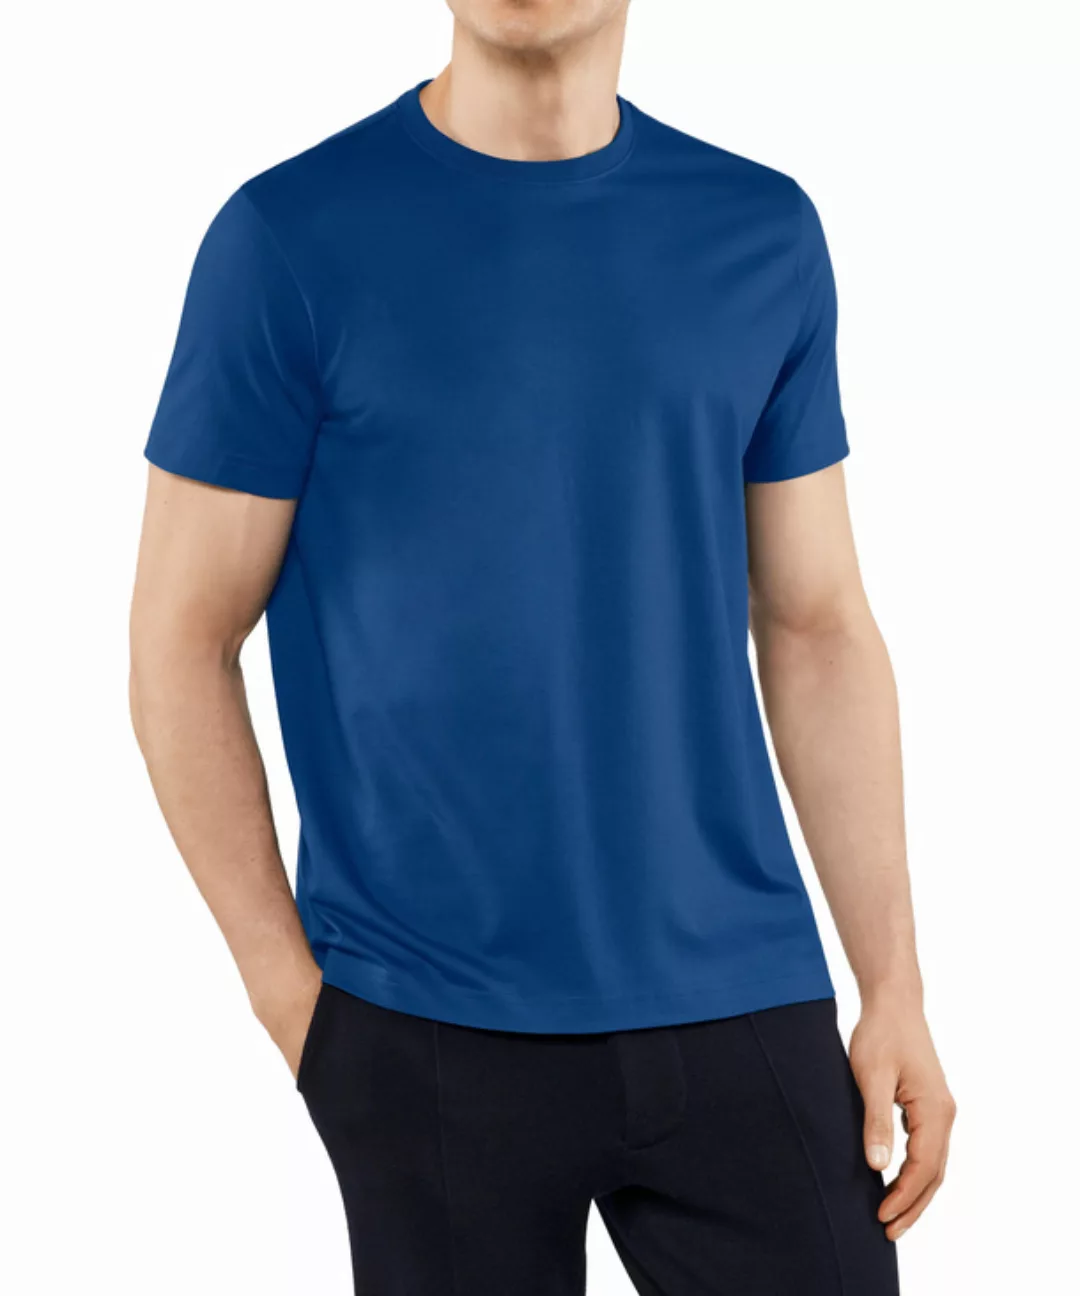 FALKE Herren T-Shirt Rundhals, Polo, L, Blau, Uni,Struktur, Baumwolle, 6210 günstig online kaufen